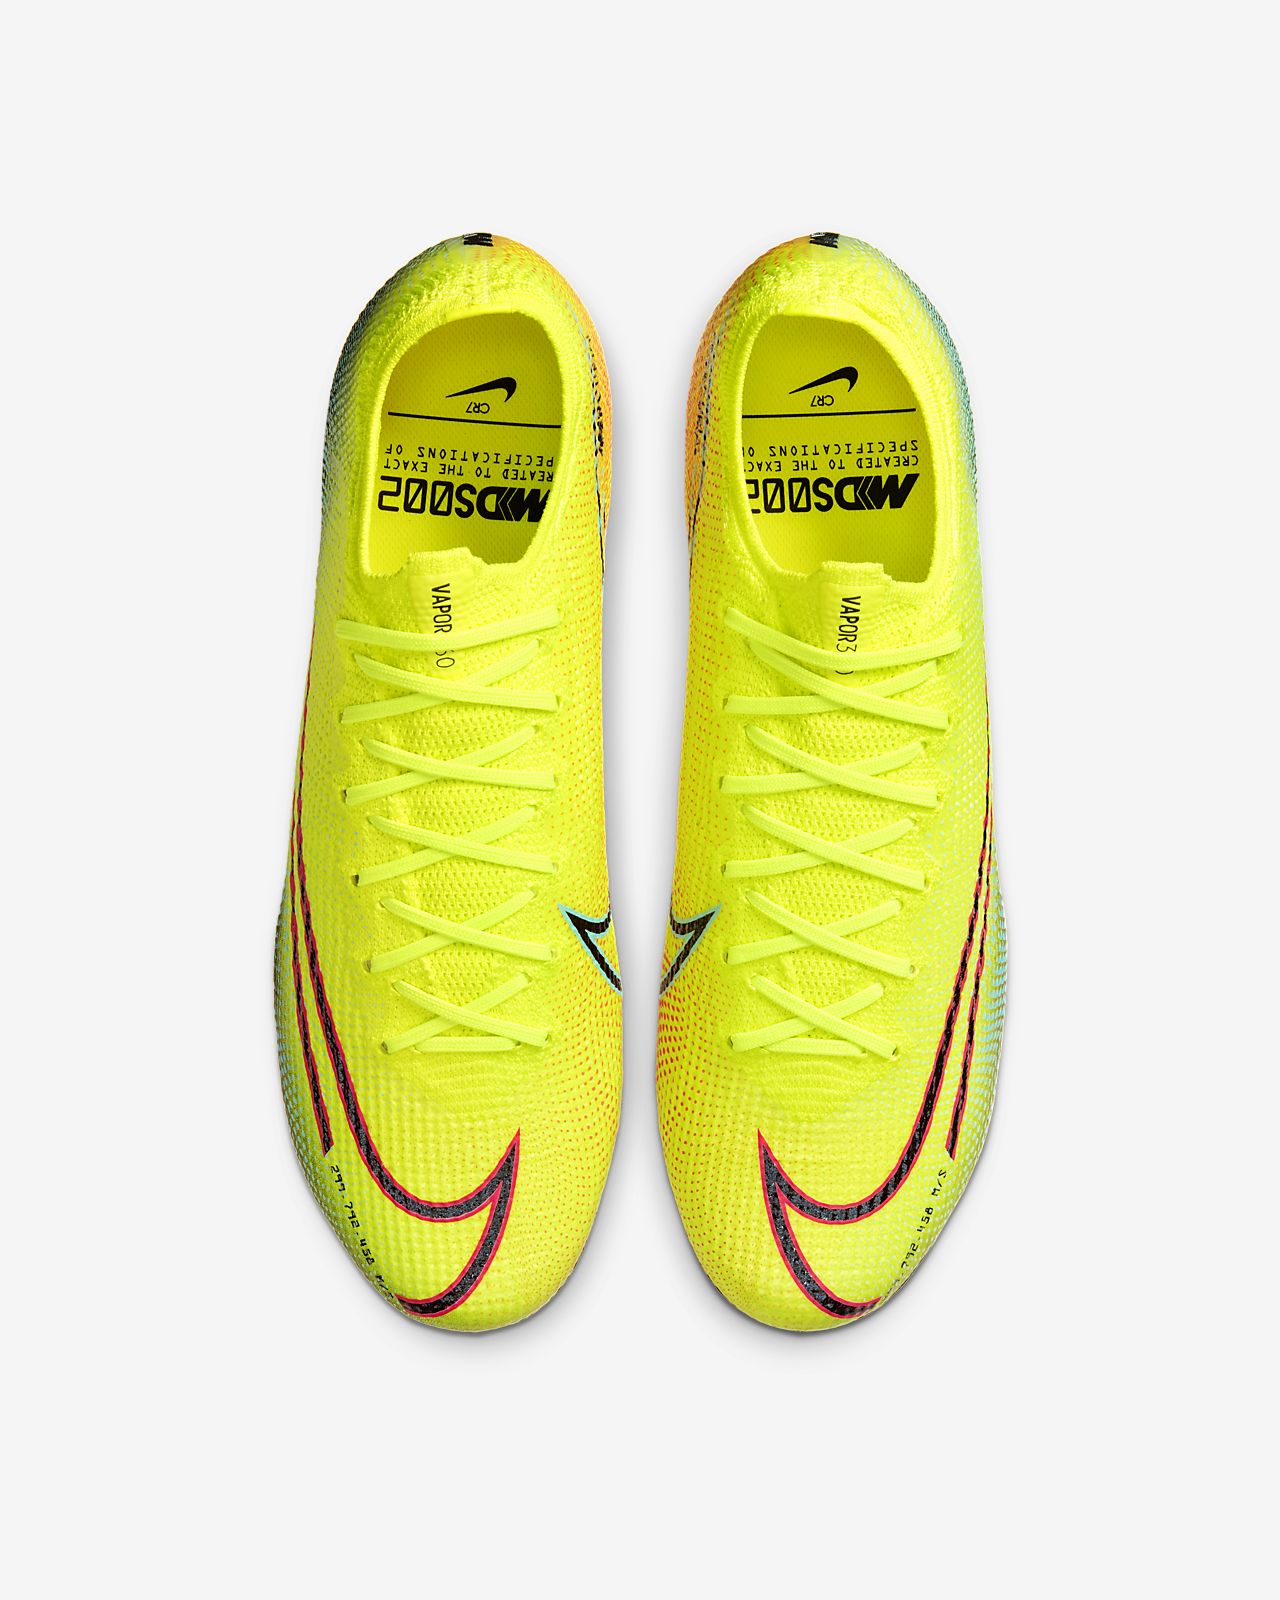 Nike Mercurial Dream Speed first look soccerloco blog